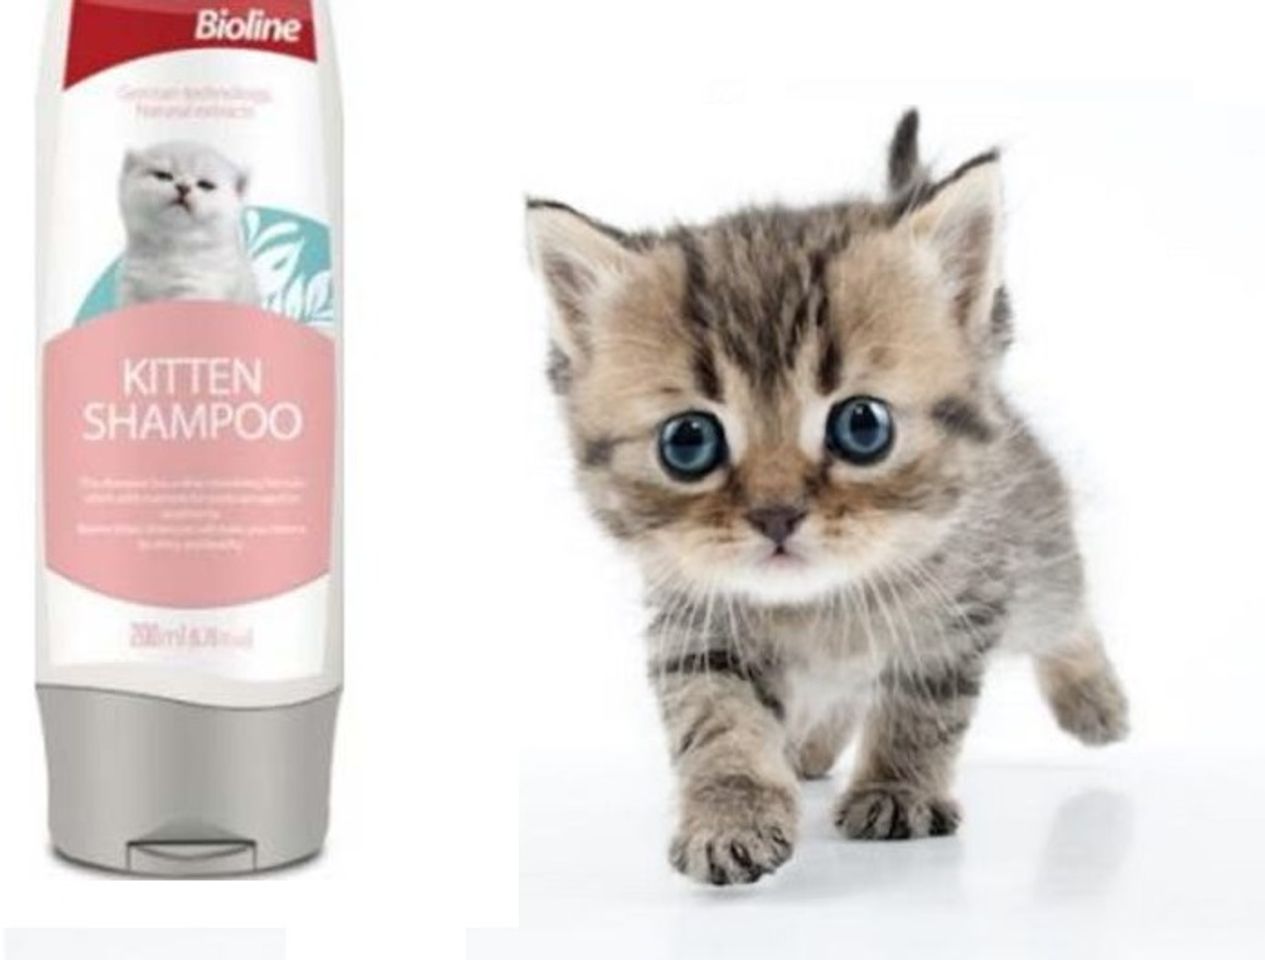 Dầu gội Bioline Kitten Shampoo sử dụng cho mèo